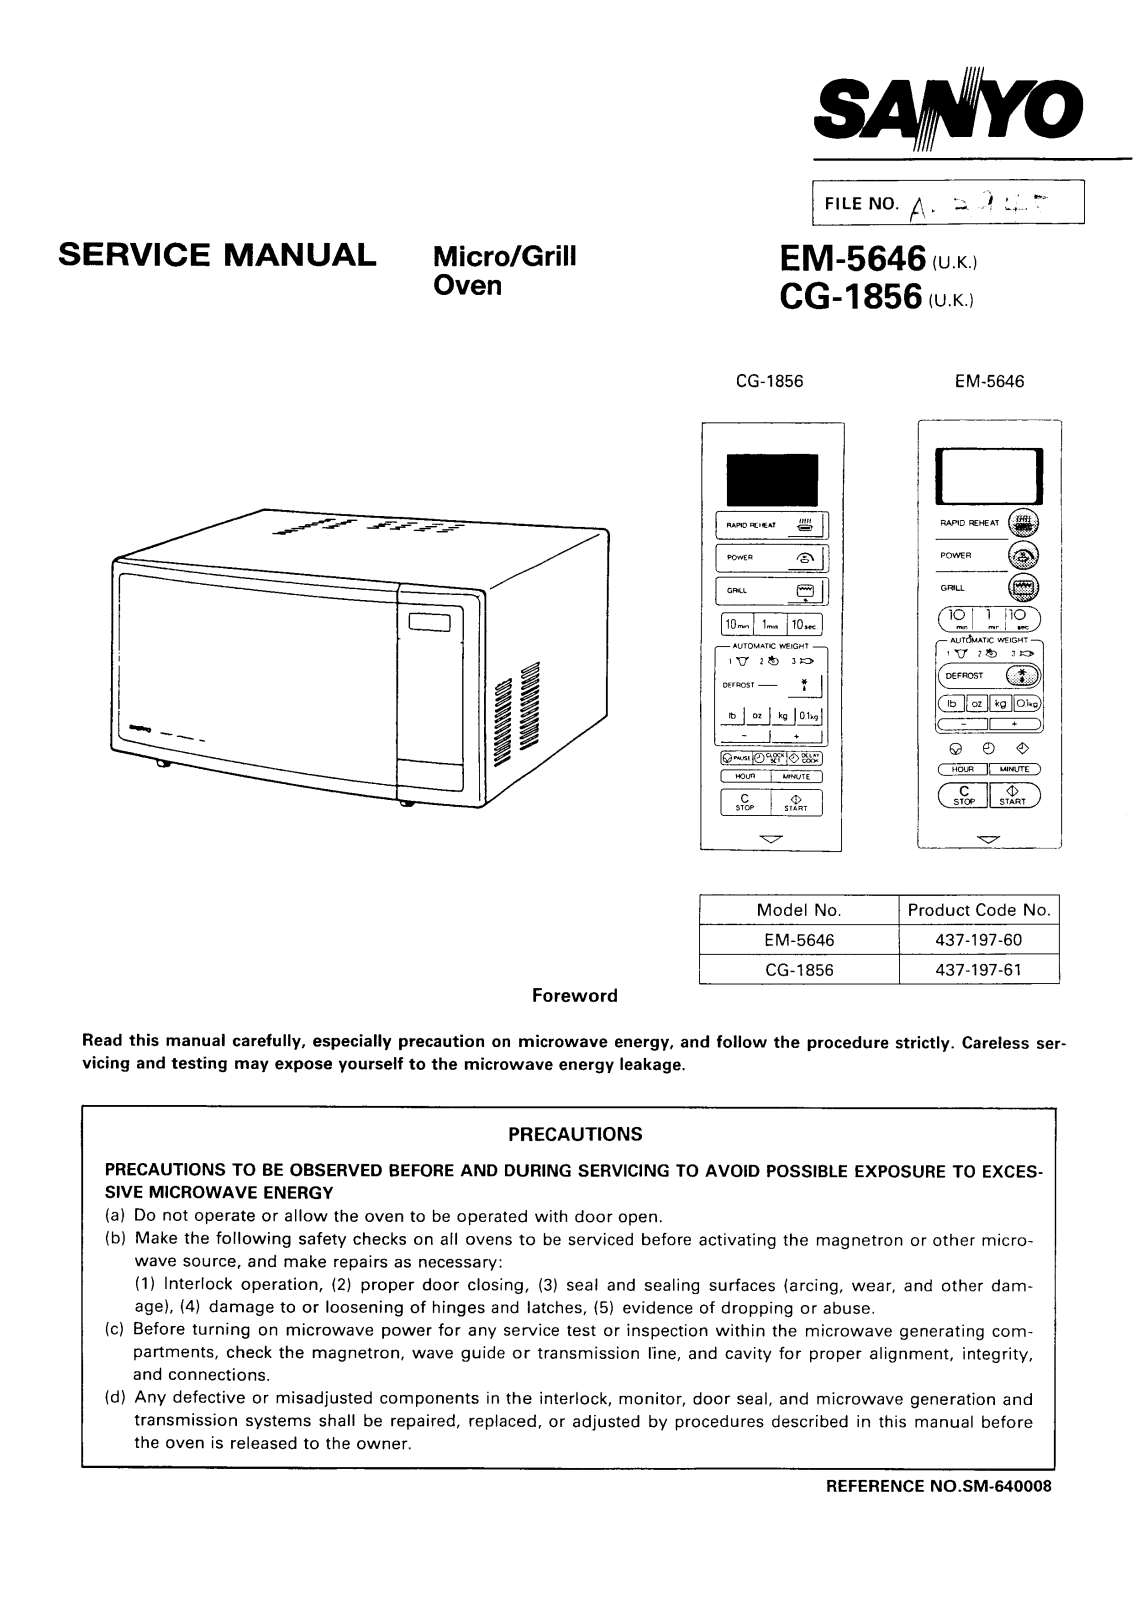 SANYO EM-5646 Service Manual